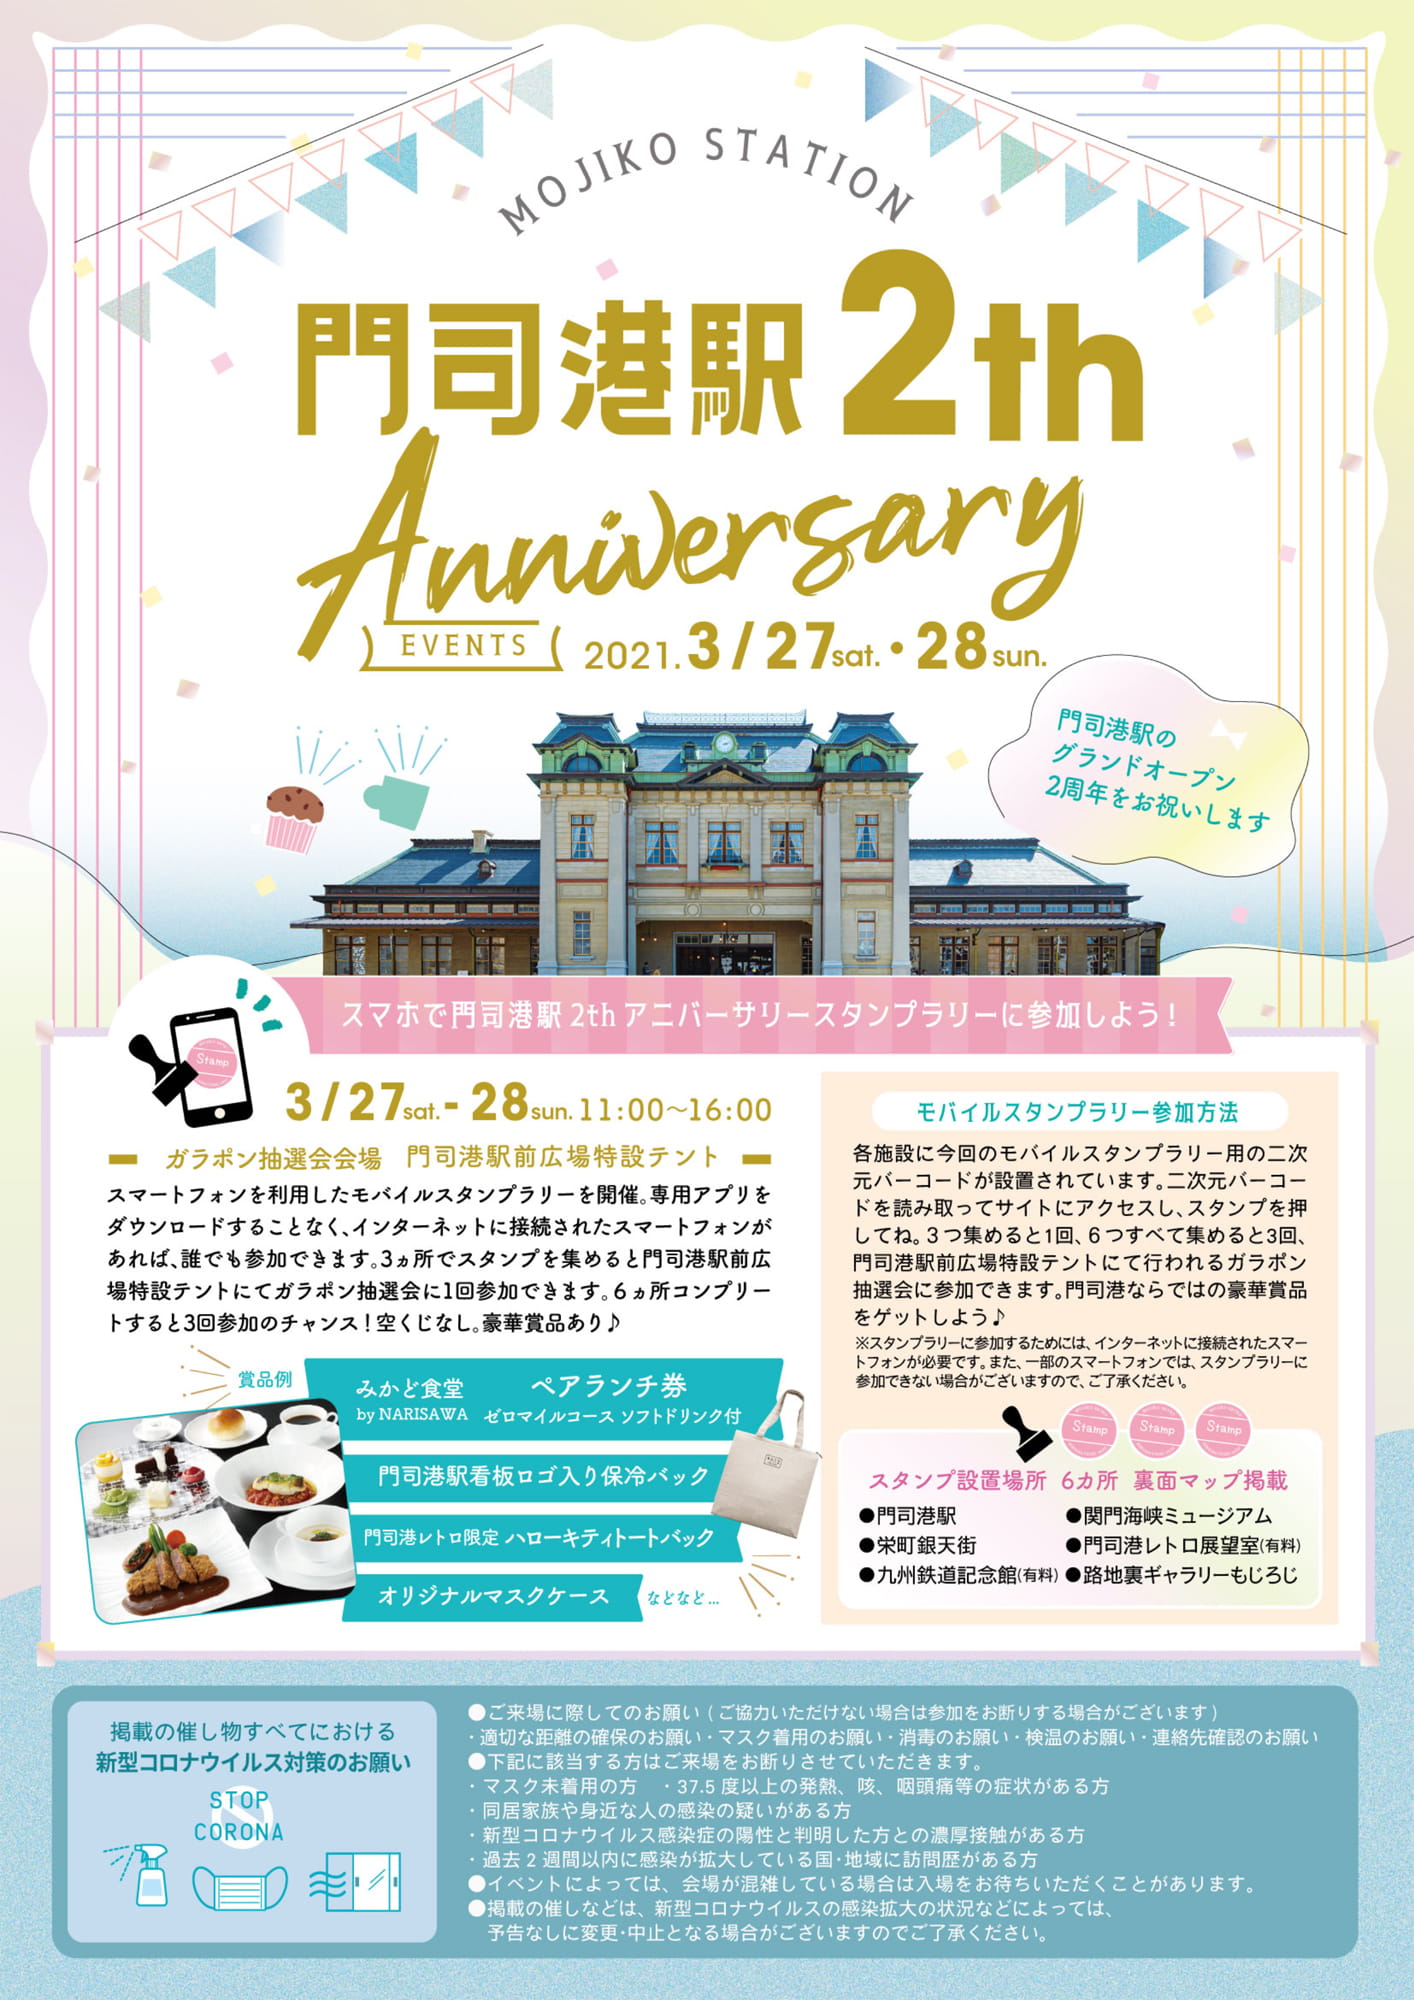 門司港駅2th Anniversary